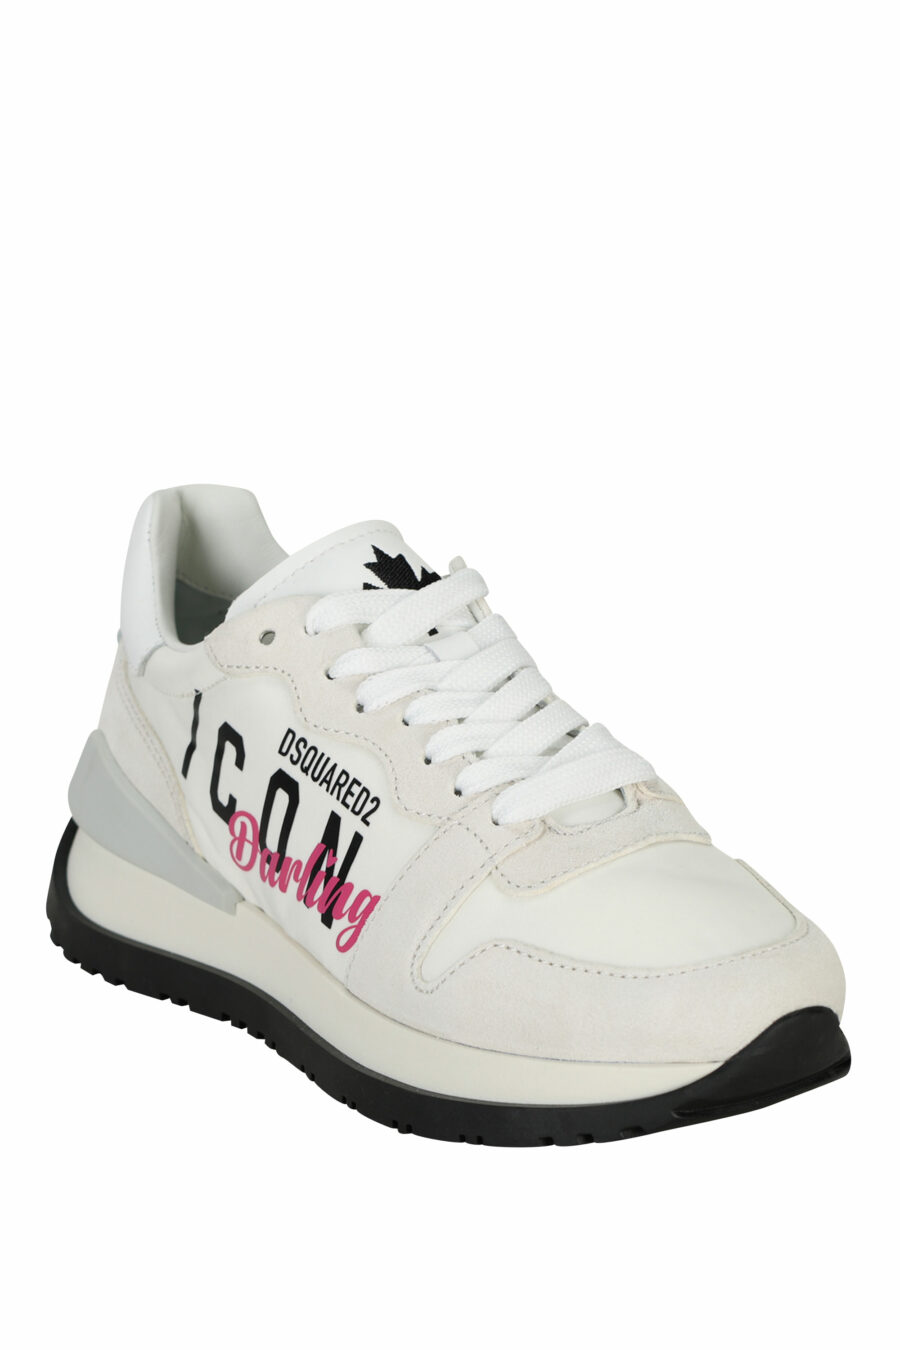 Zapatillas blancas con logo "icon darling" - 8055777310106 1